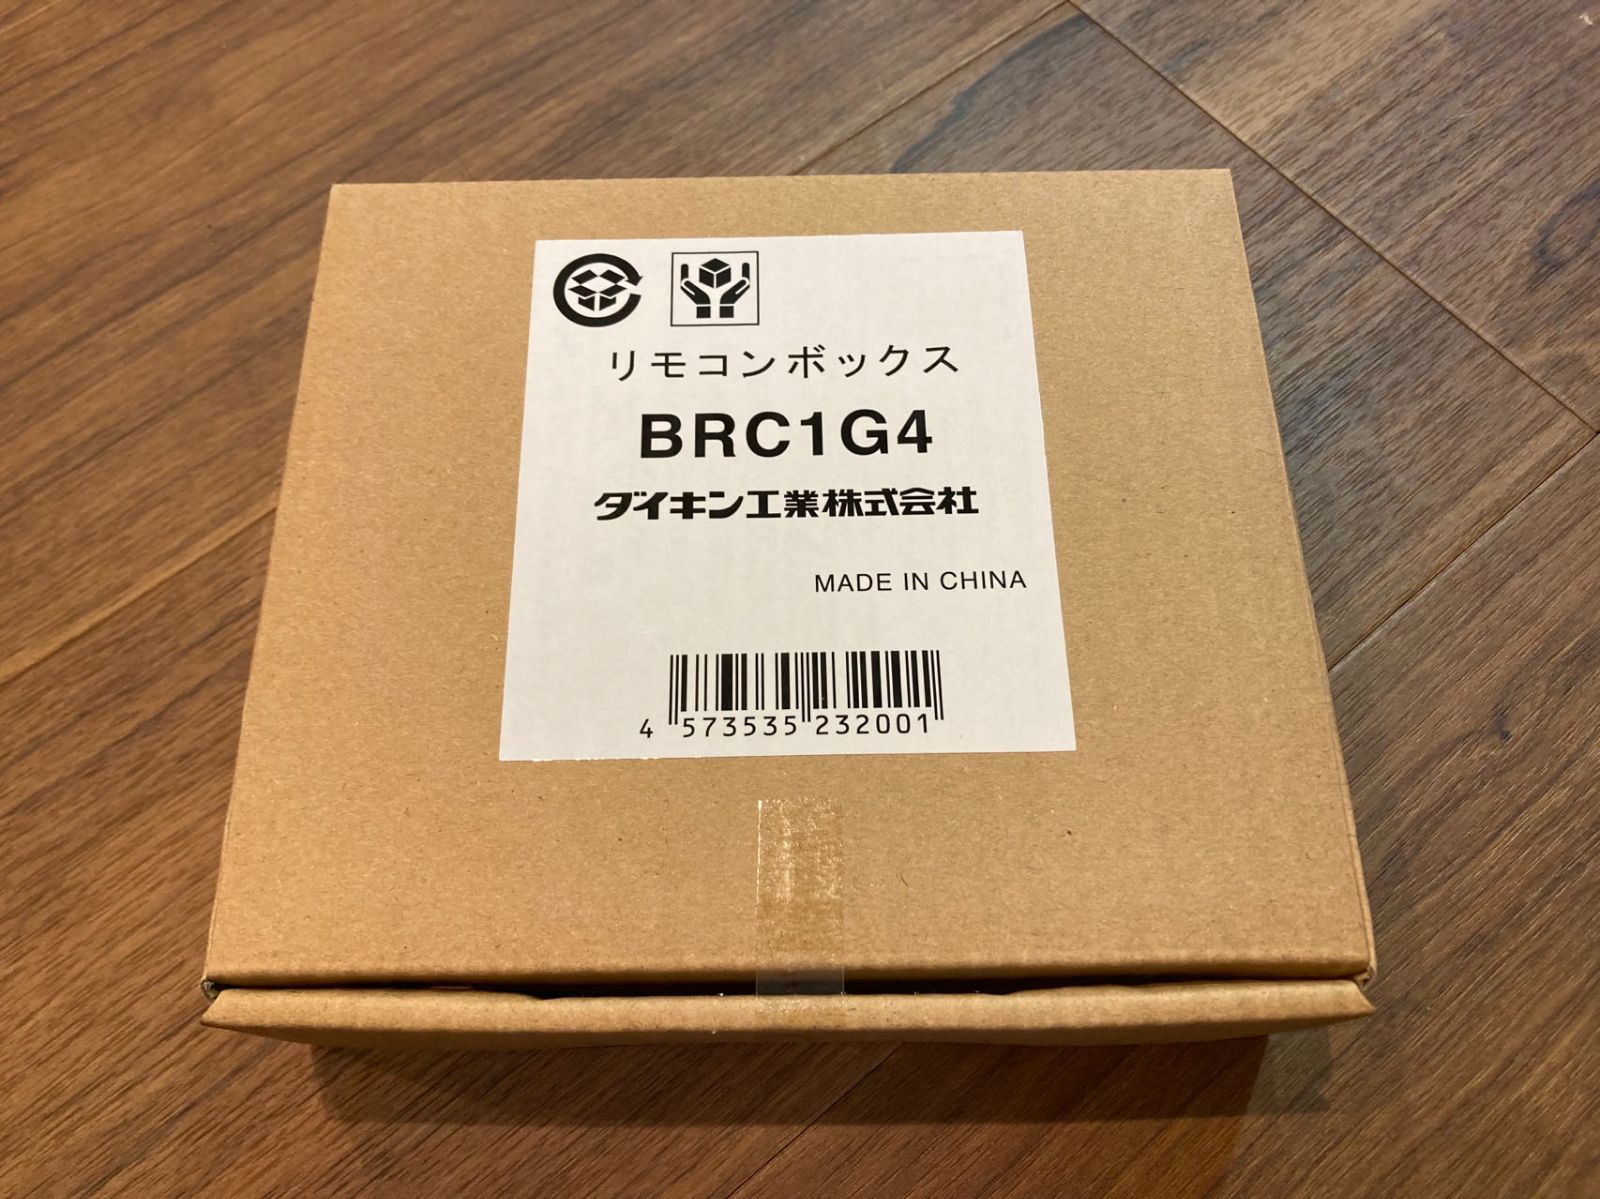 リモコンボックス BRC1G4 - エアコン